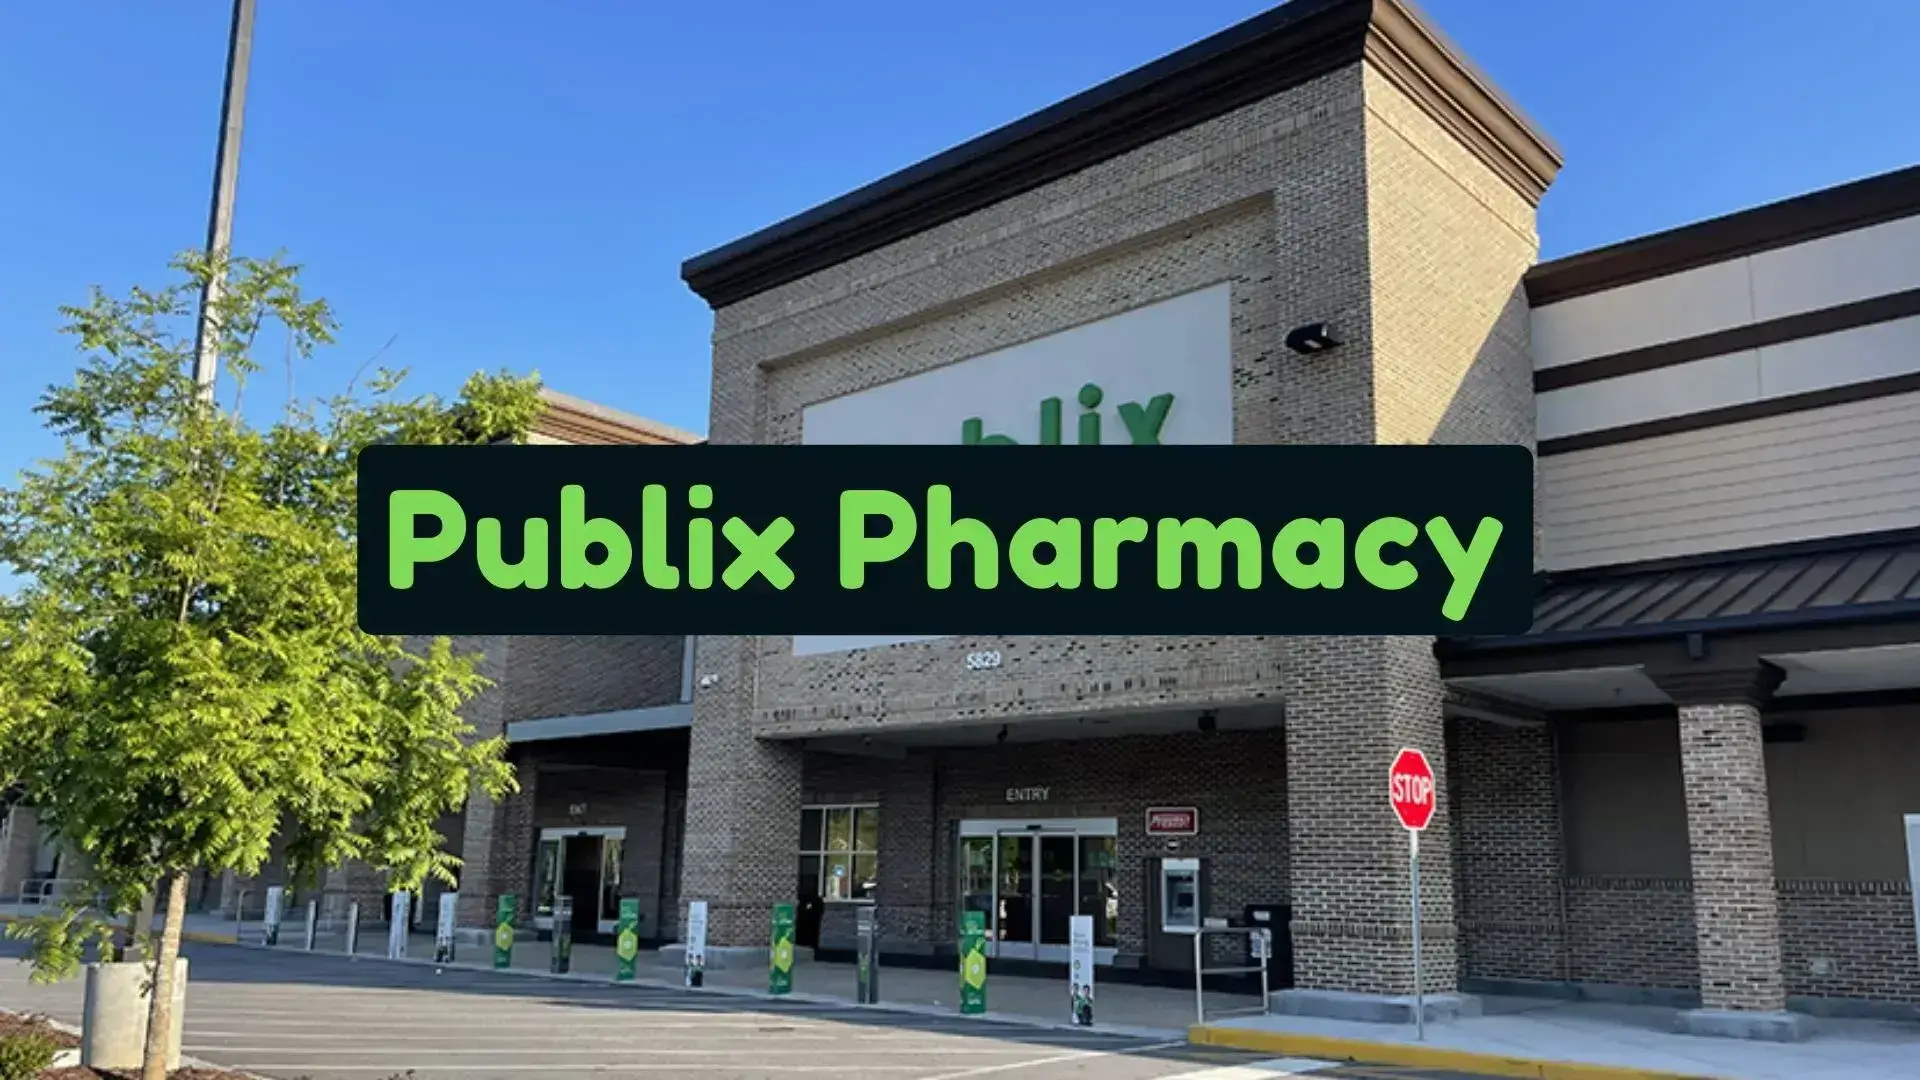 Publix Pharmacy Hours - Visit Publix Pharmacy Near Me Location store-hour.com